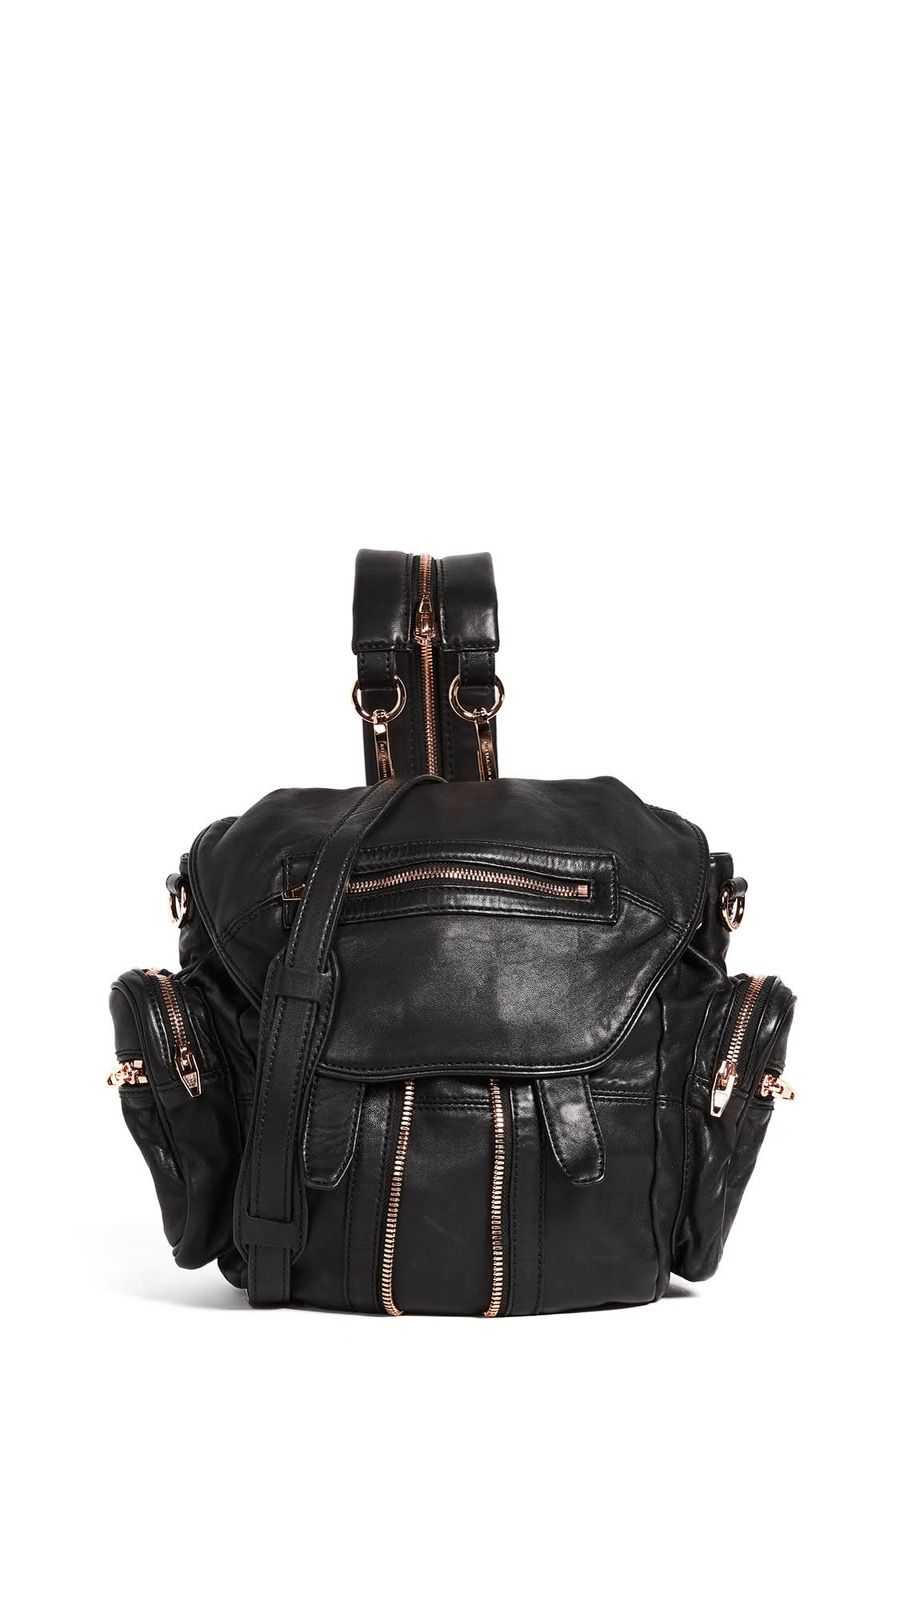 Authentic Alexander Wang Leather Backpack Shoulder Bag - 2